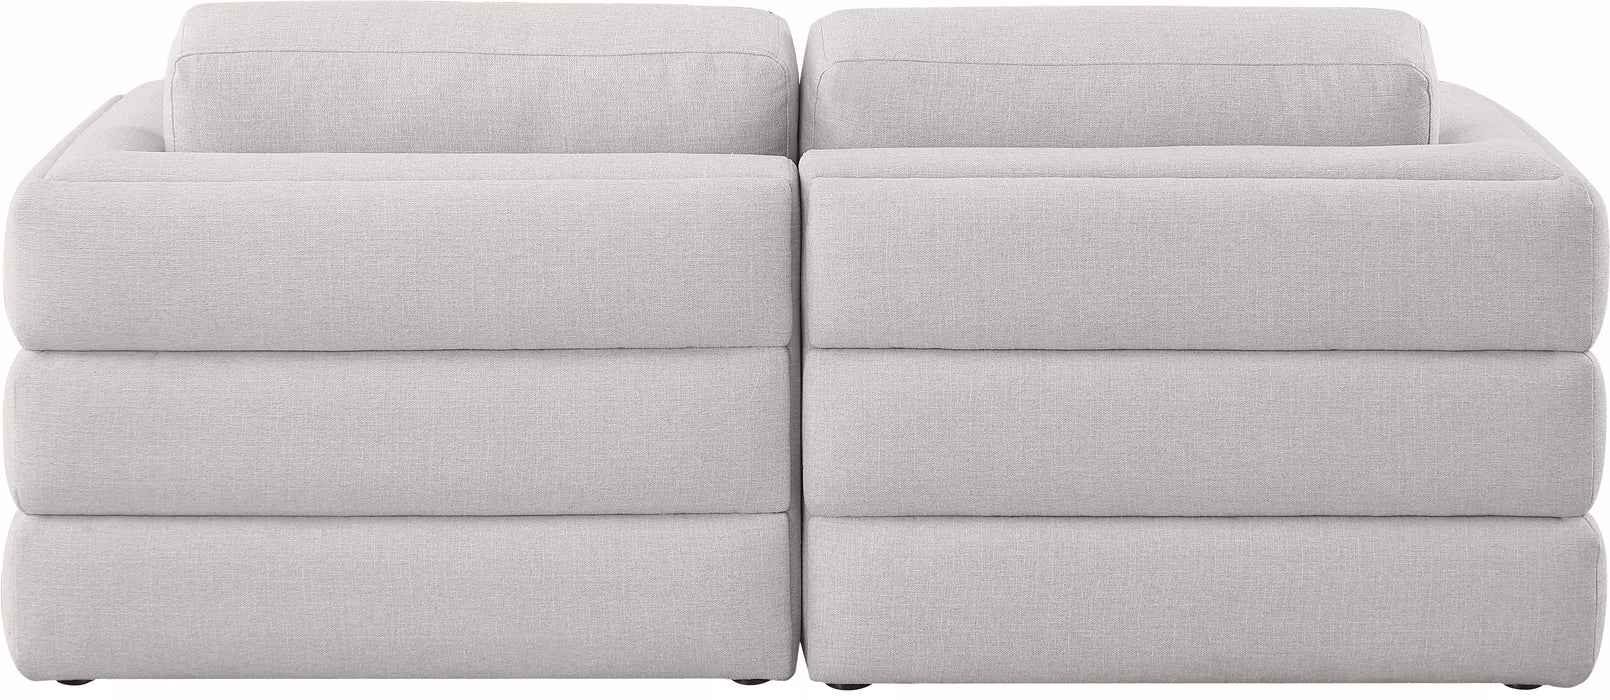 Beckham - Modular Sofa 2 Seats